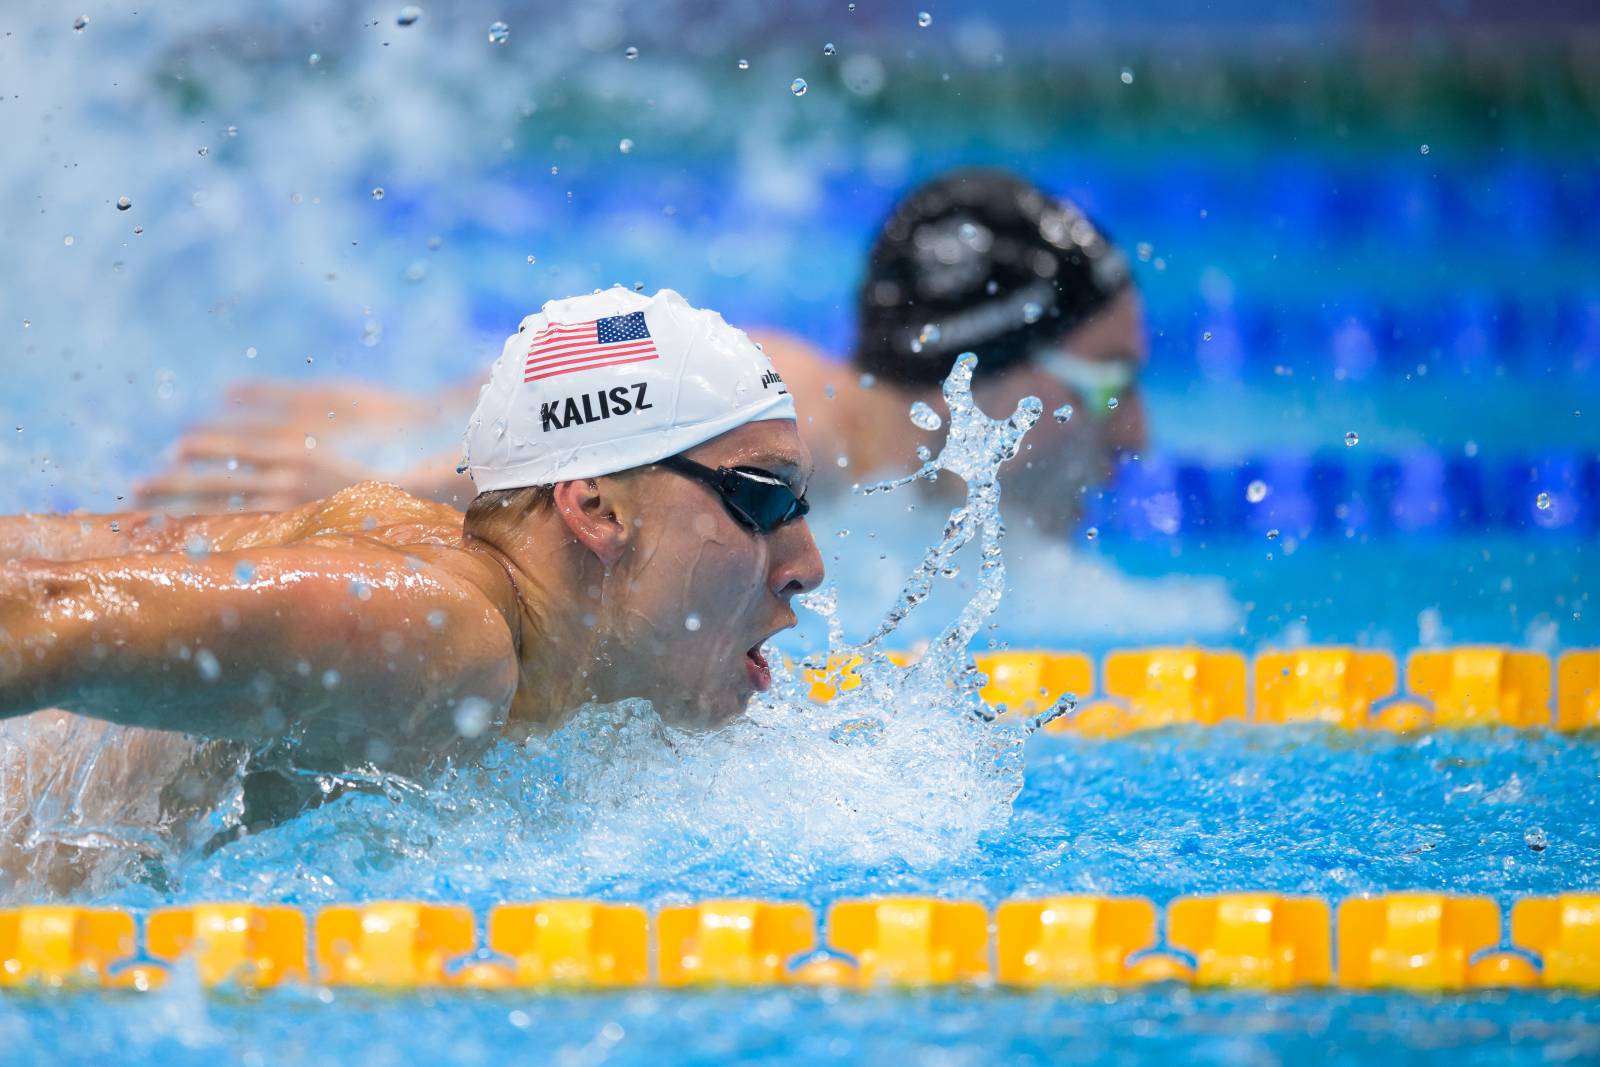 Американец Калиш стал первым чемпионом на Олимпиаде-2020 по плаванию